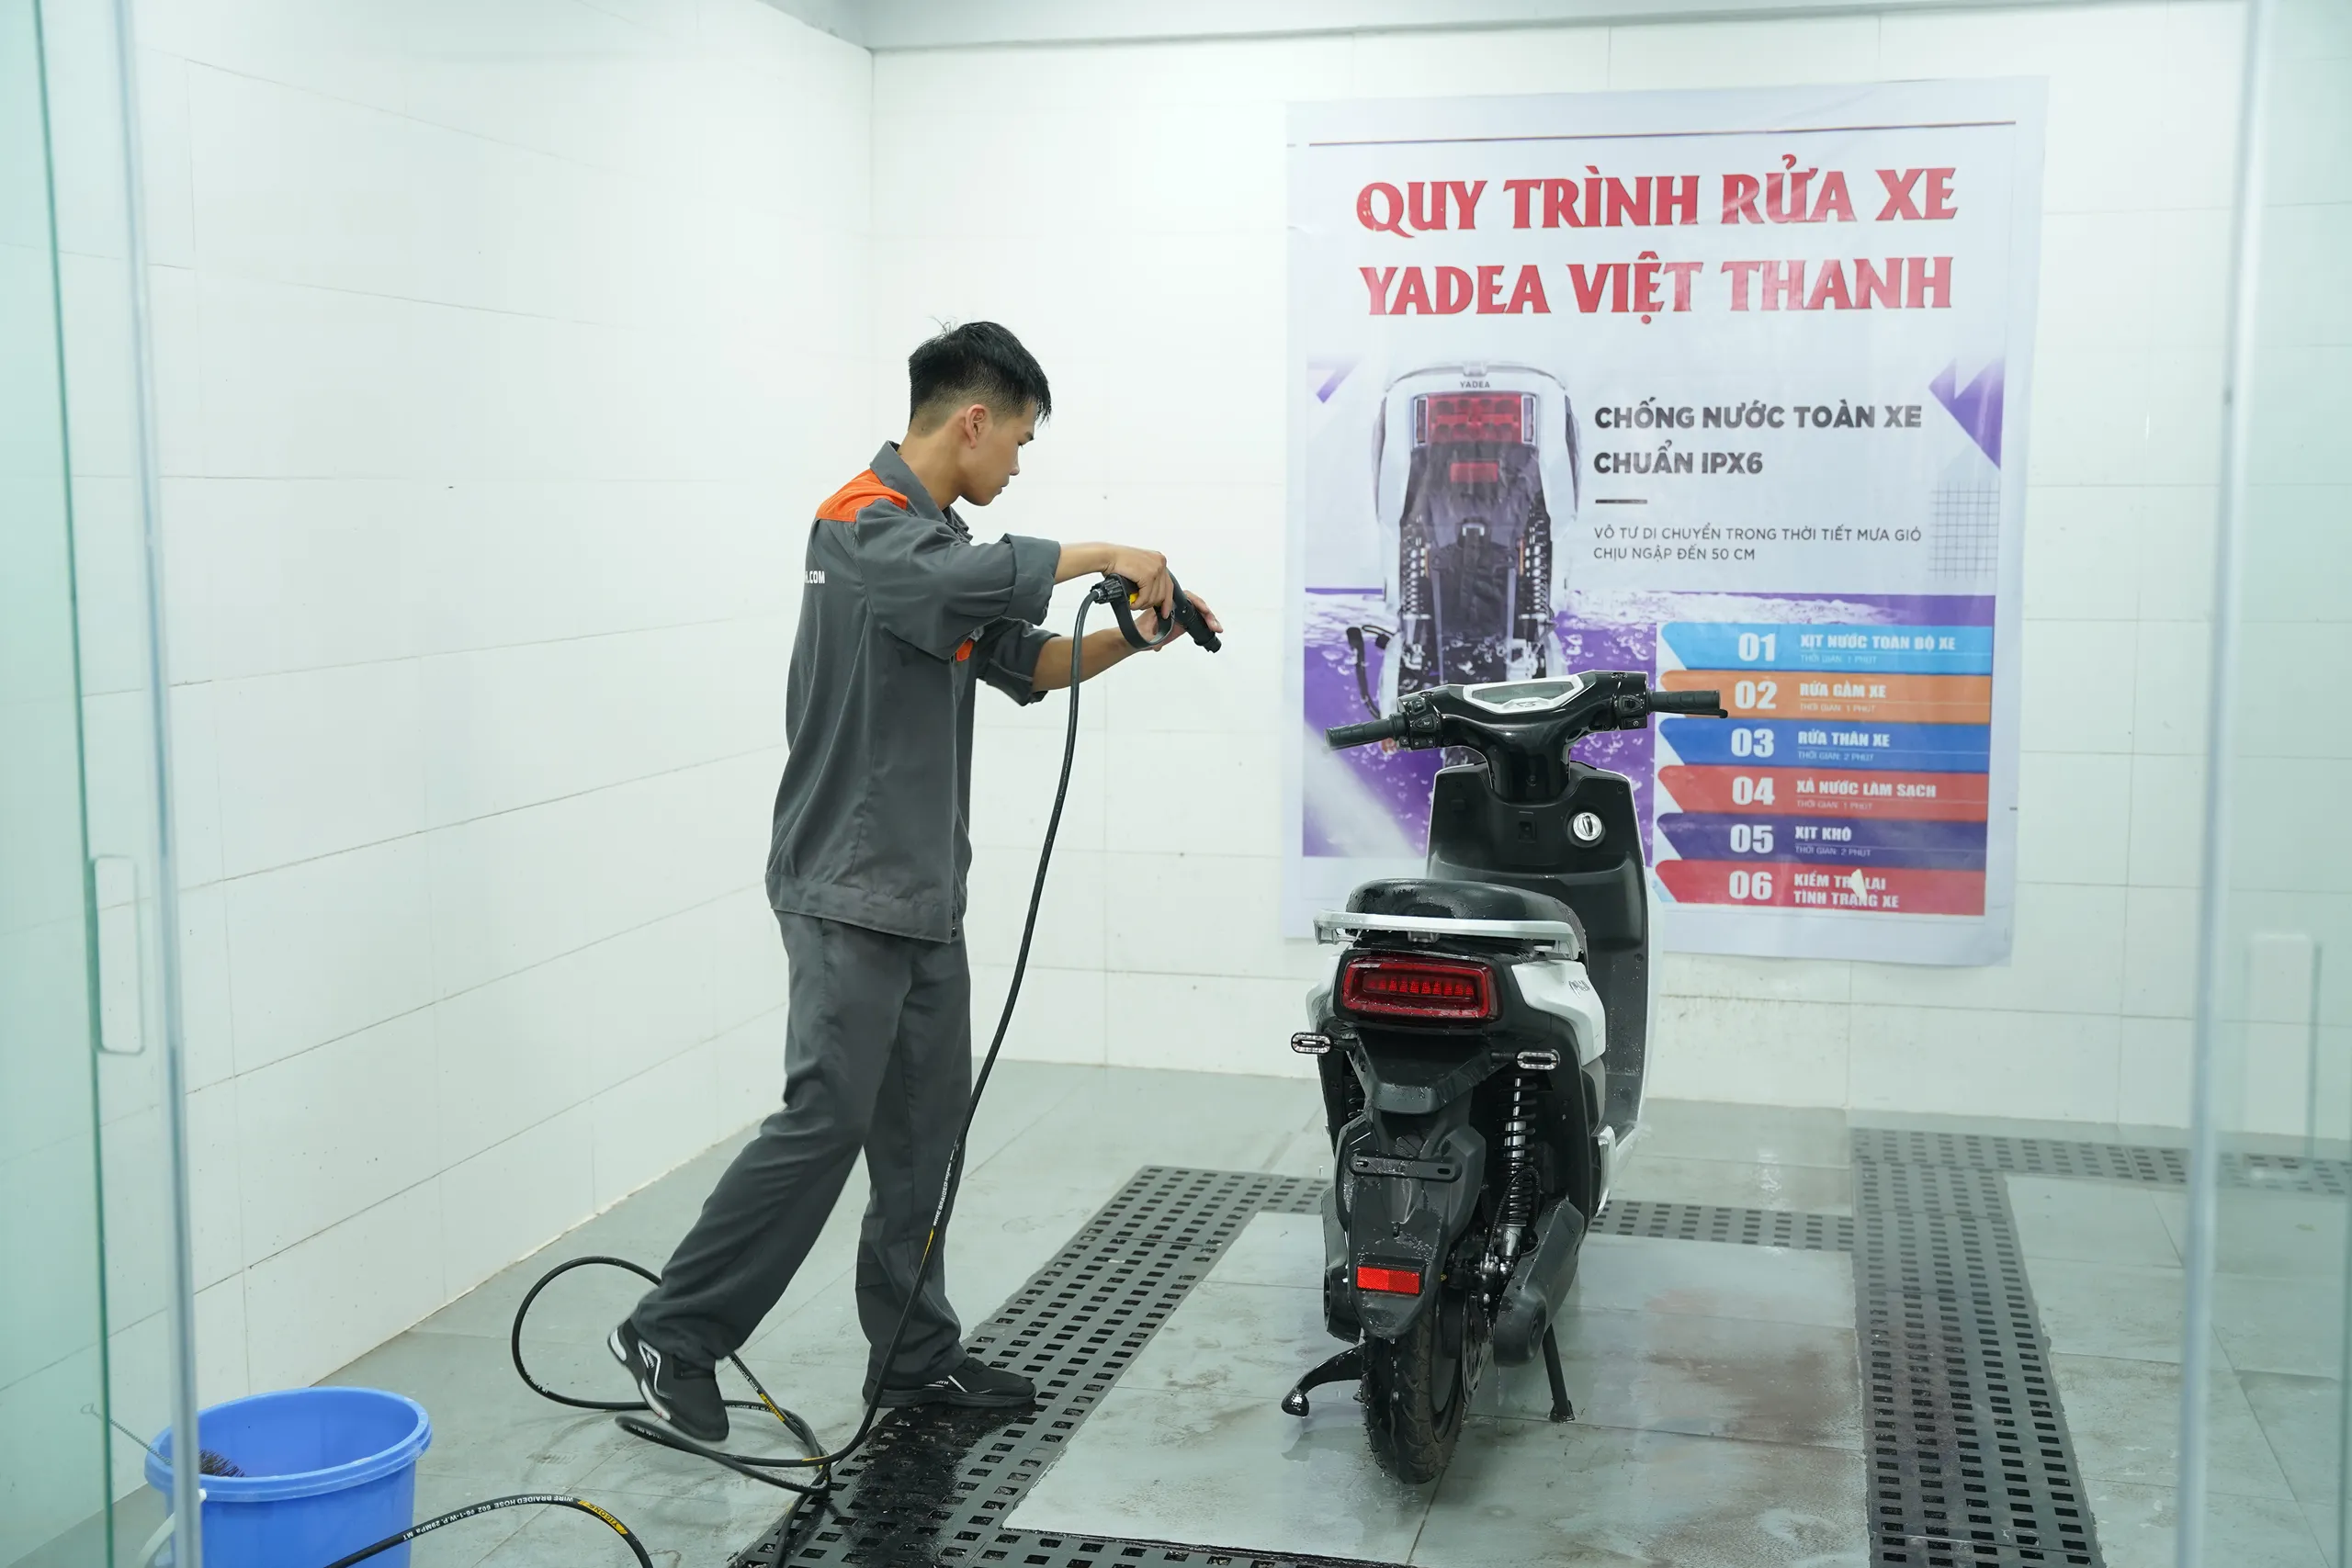 YADEA: Khai trương showroom đầu tiên theo tiêu chuẩn mới tại Việt Nam